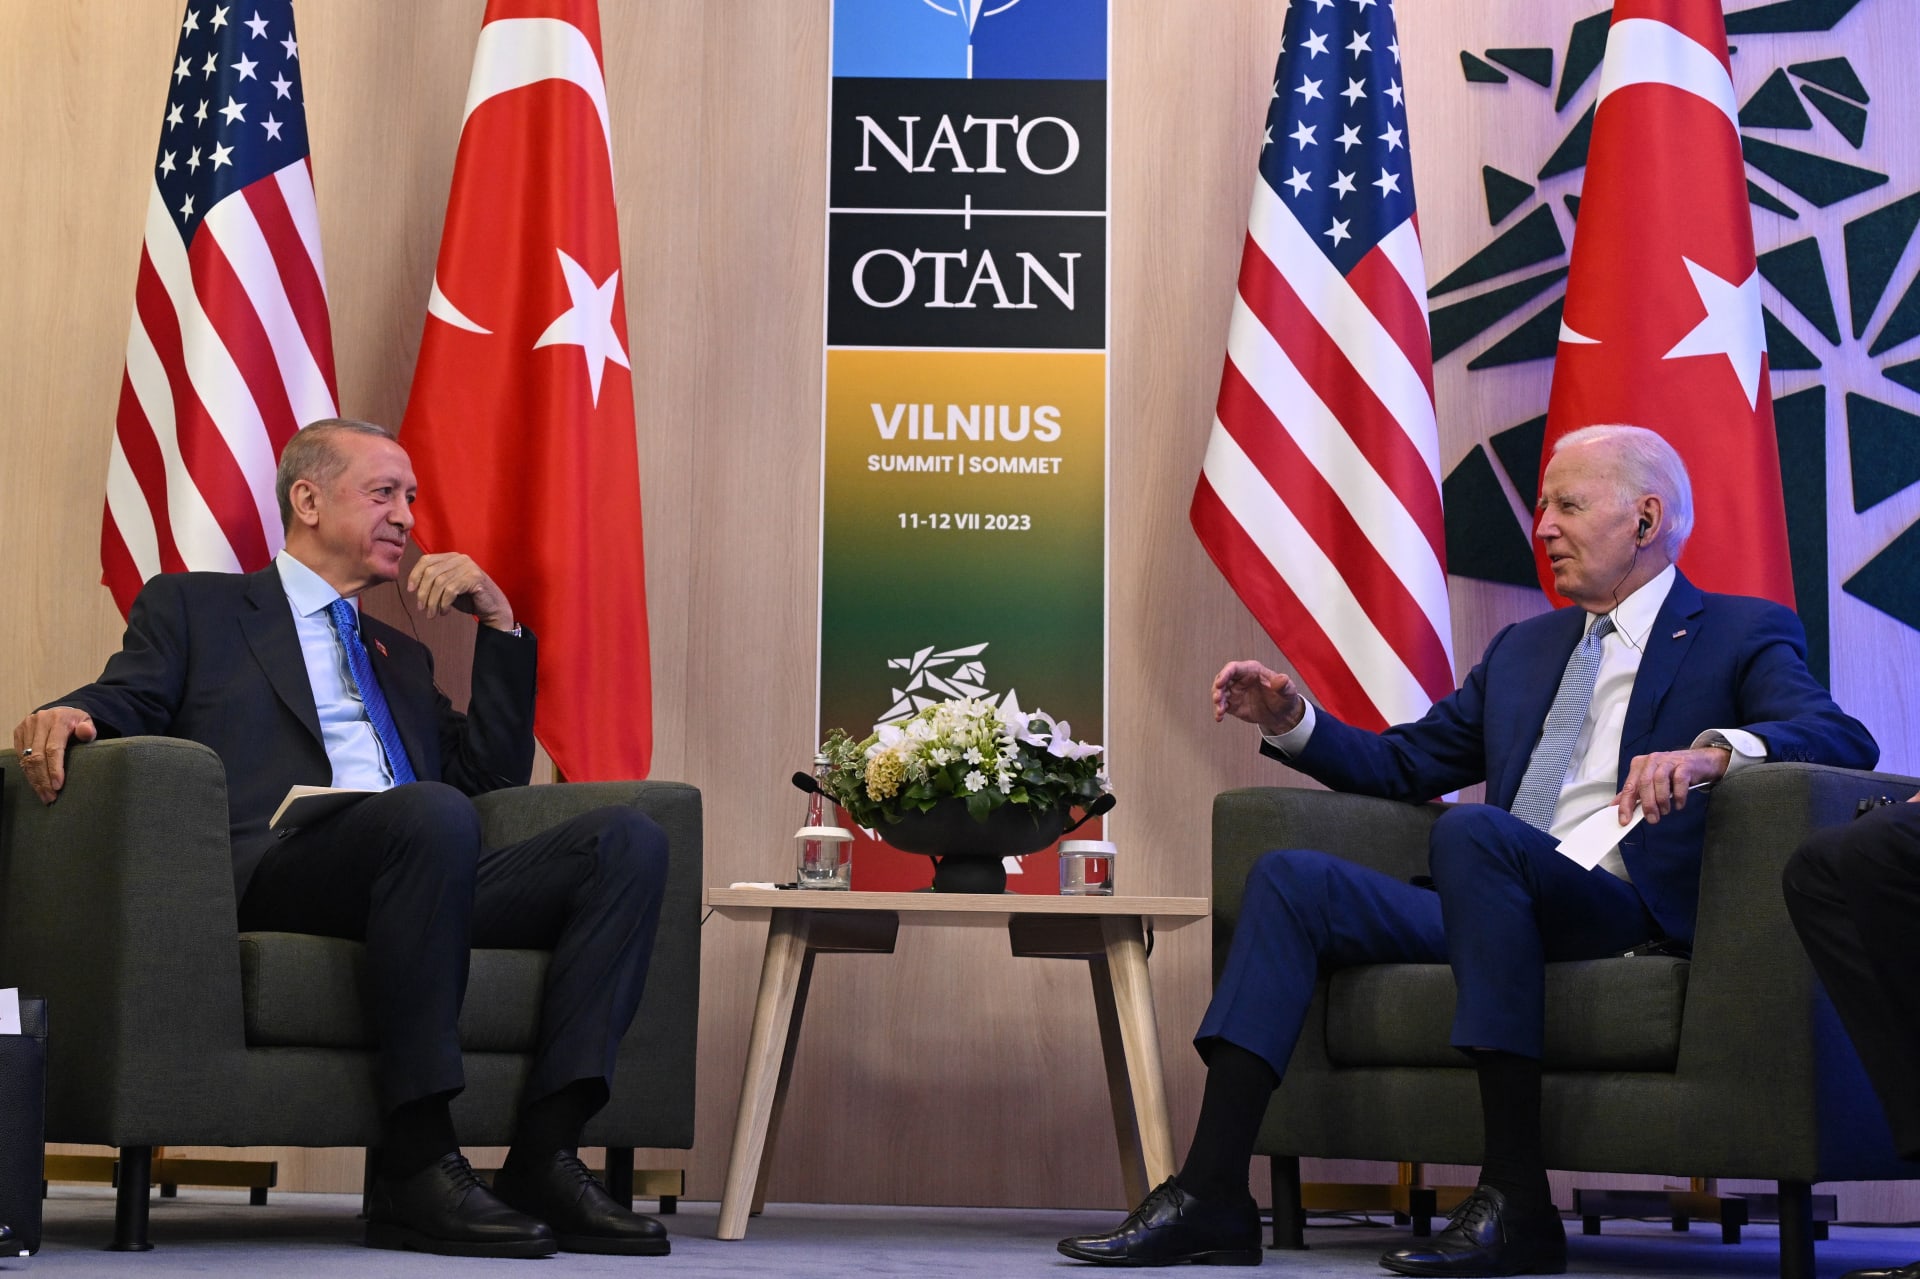 تحليل لـCNN: تركيا تتطلع إلى إعادة تقويم علاقاتها مع الغرب مع تزايد عزلة روسيا